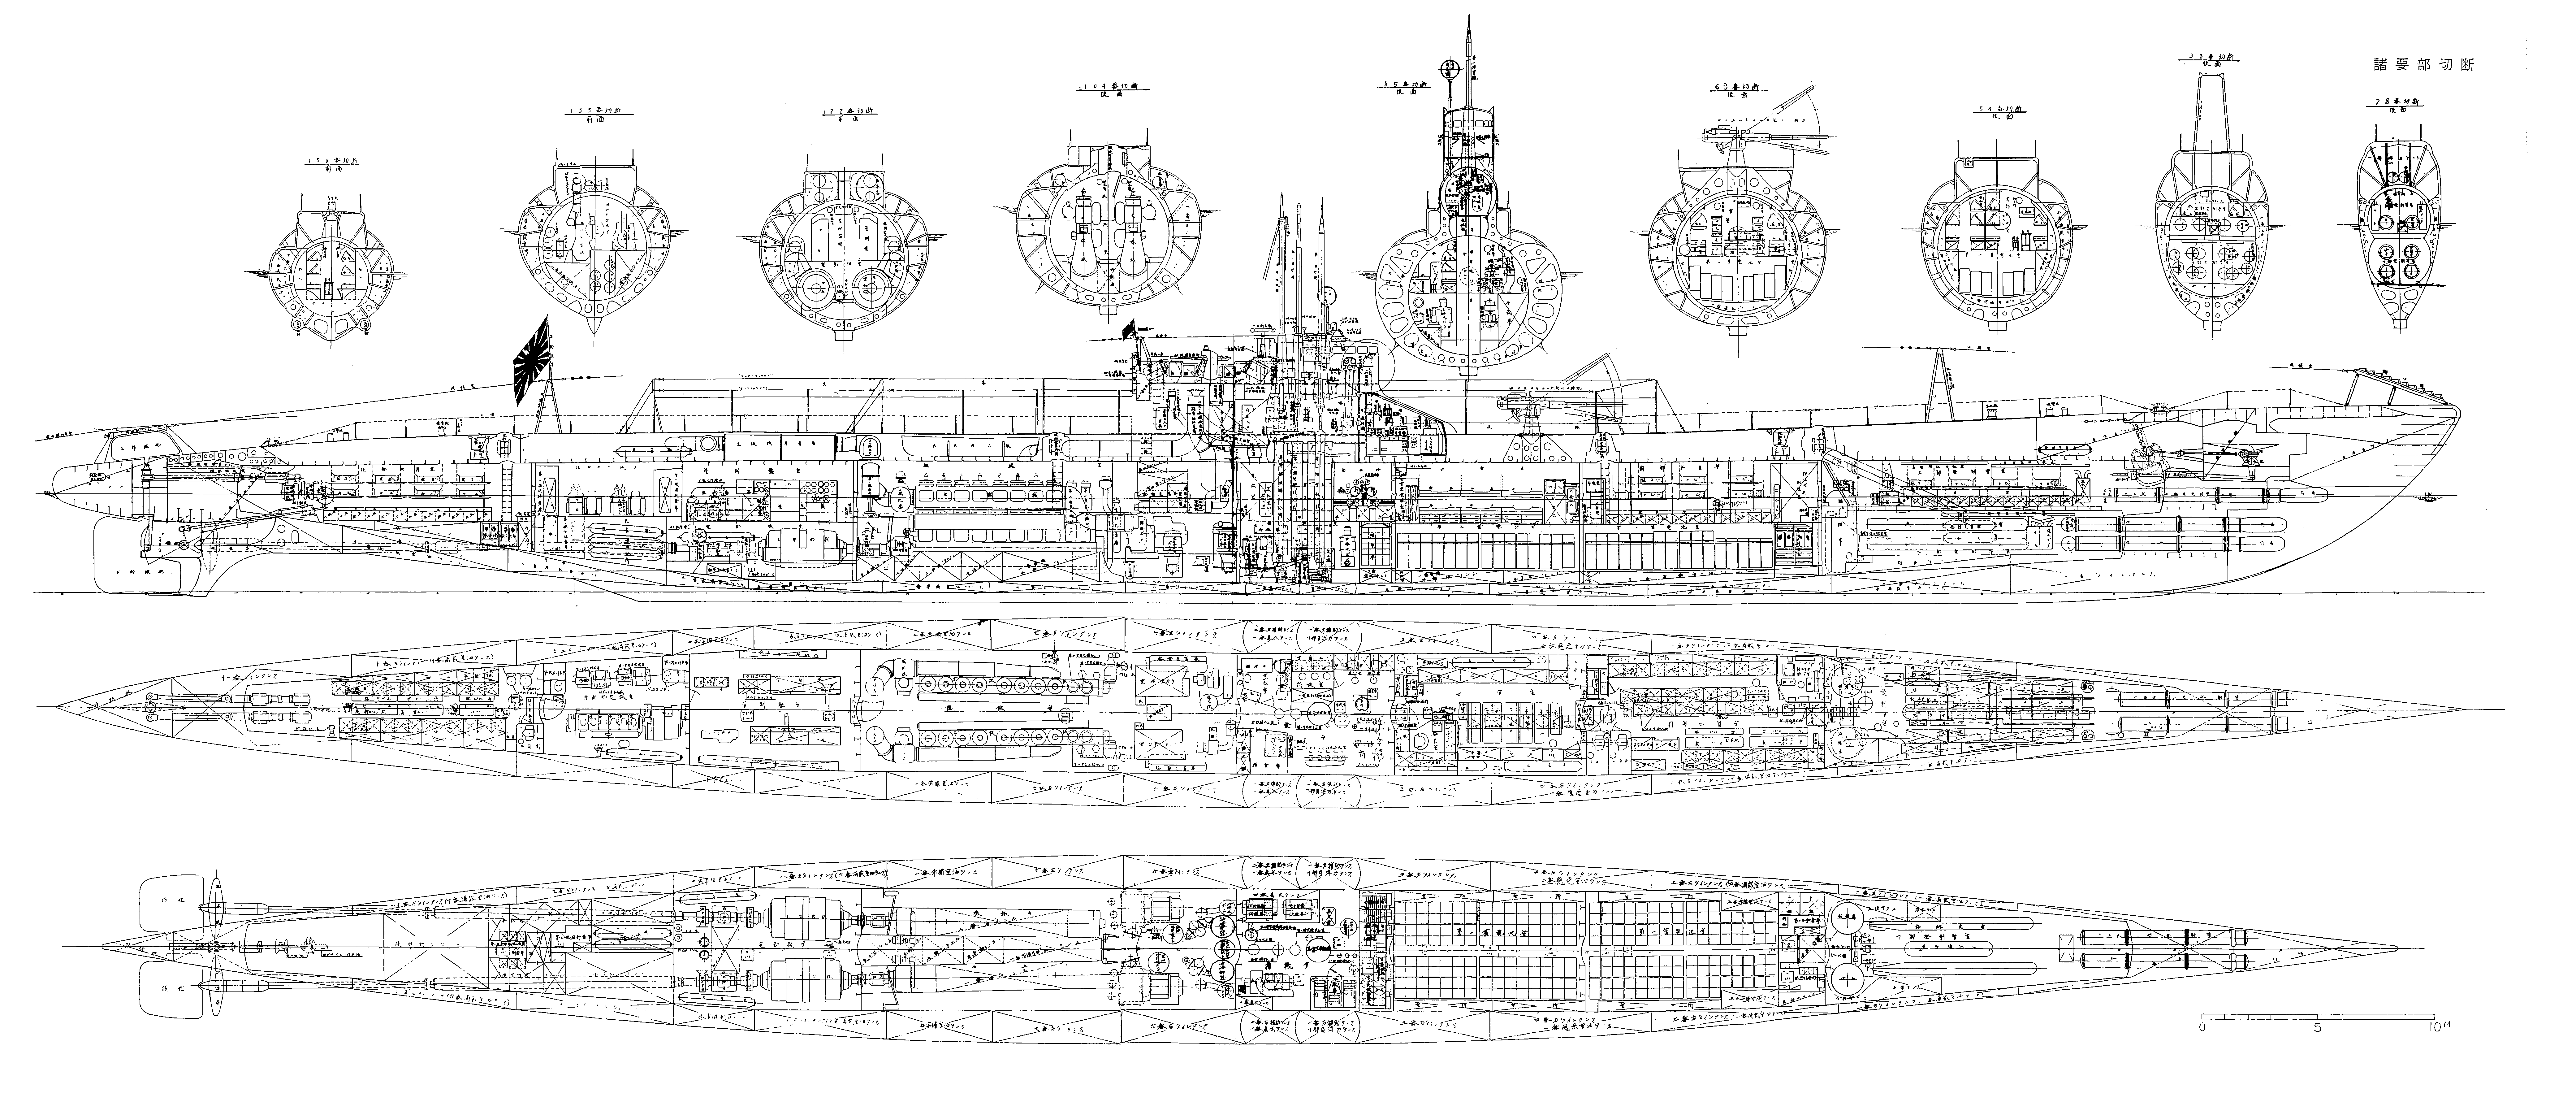 Japanese submarine I-182 blueprint